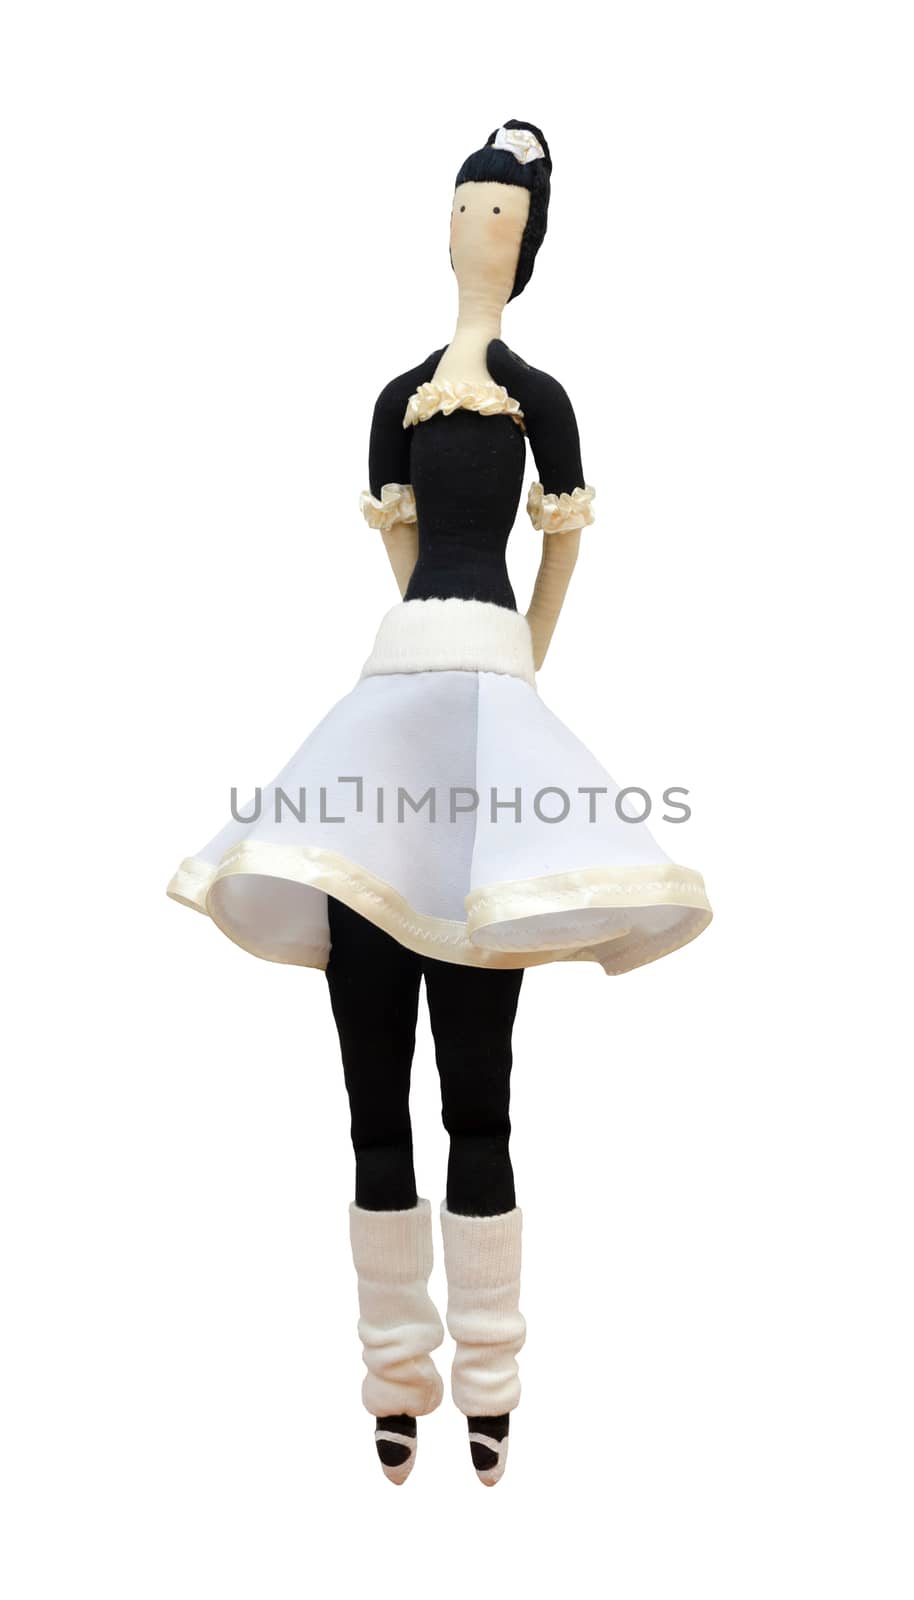 The FS-Handmade isolated doll ballerina in white skirt